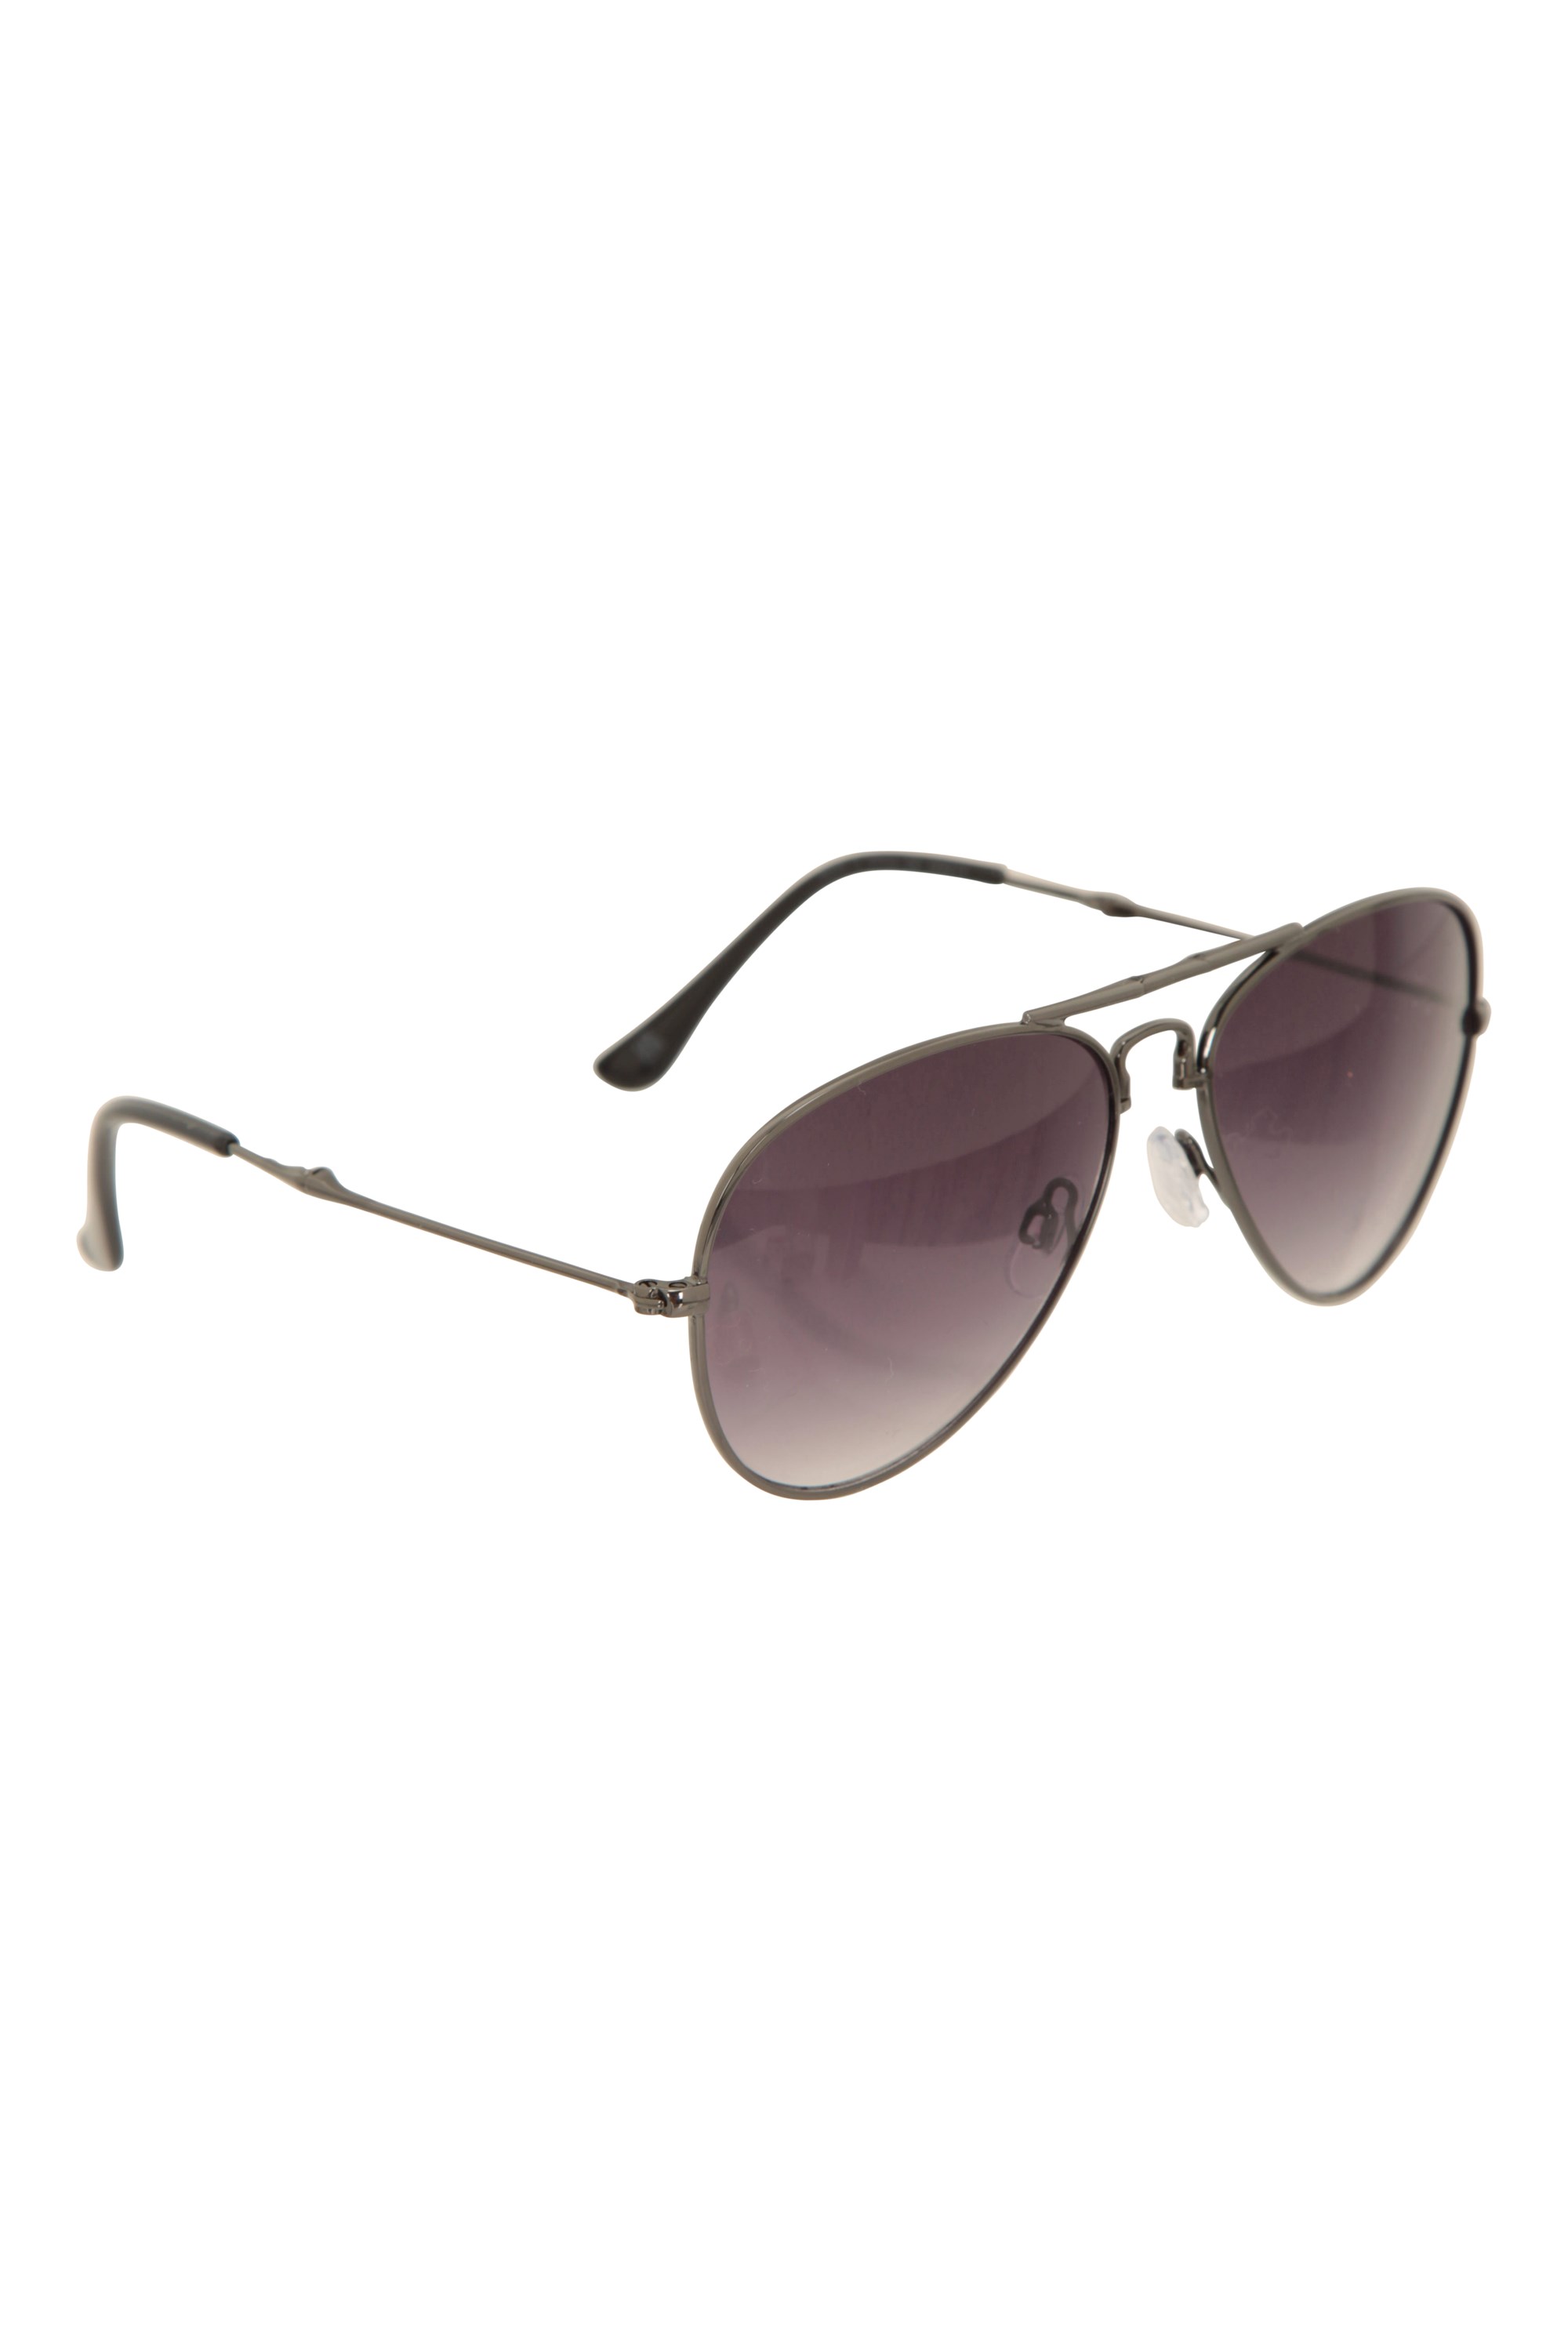 Magic Foldable Sunglasses - Silver